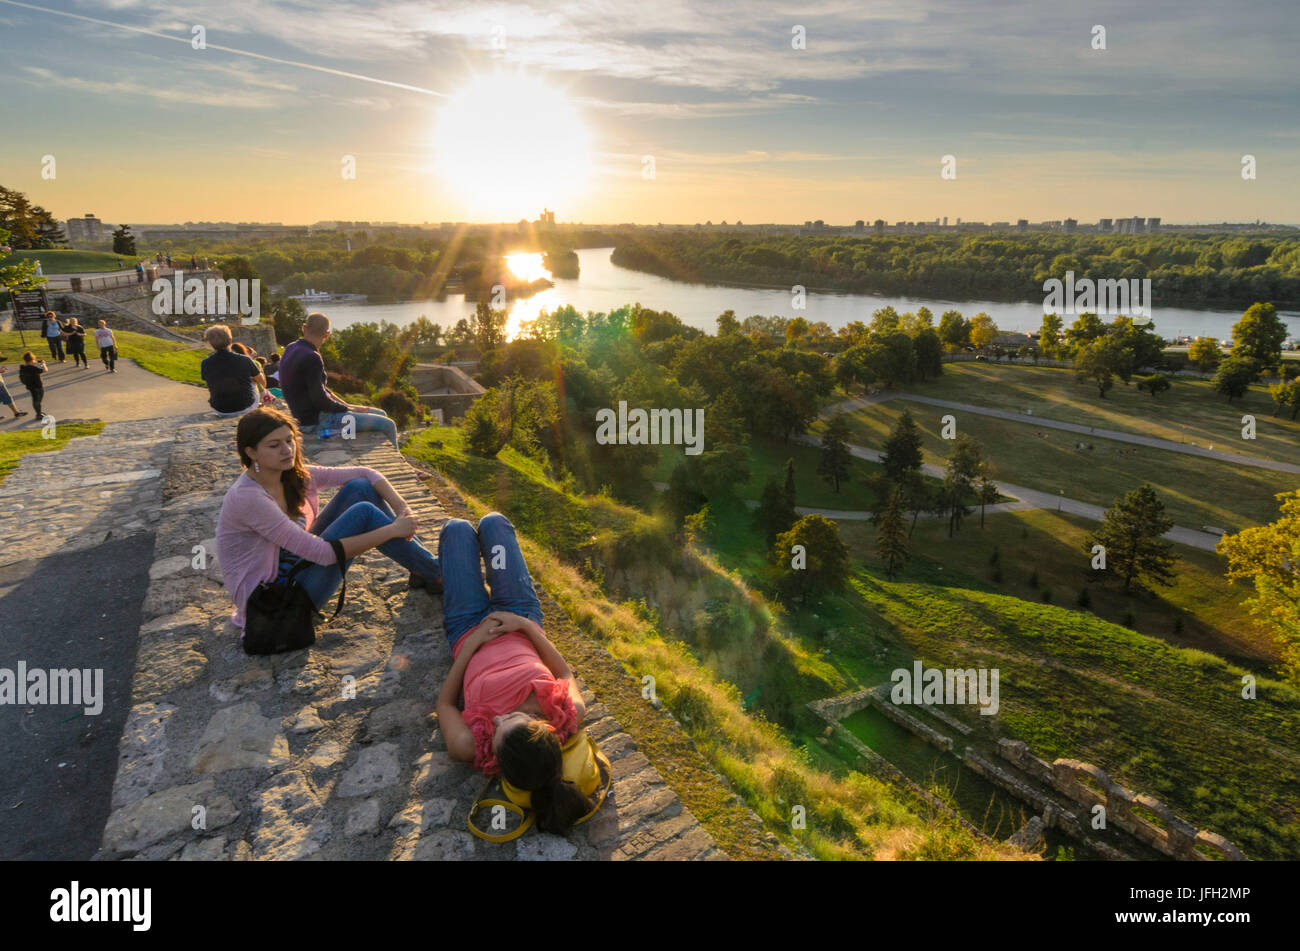 Festung mit dem Kalemegdan-Park, Blick auf den Zusammenfluss von save und Donau und auf Novi Beograd mit der Genex-Turm, Serbien, Belgrad Stockfoto